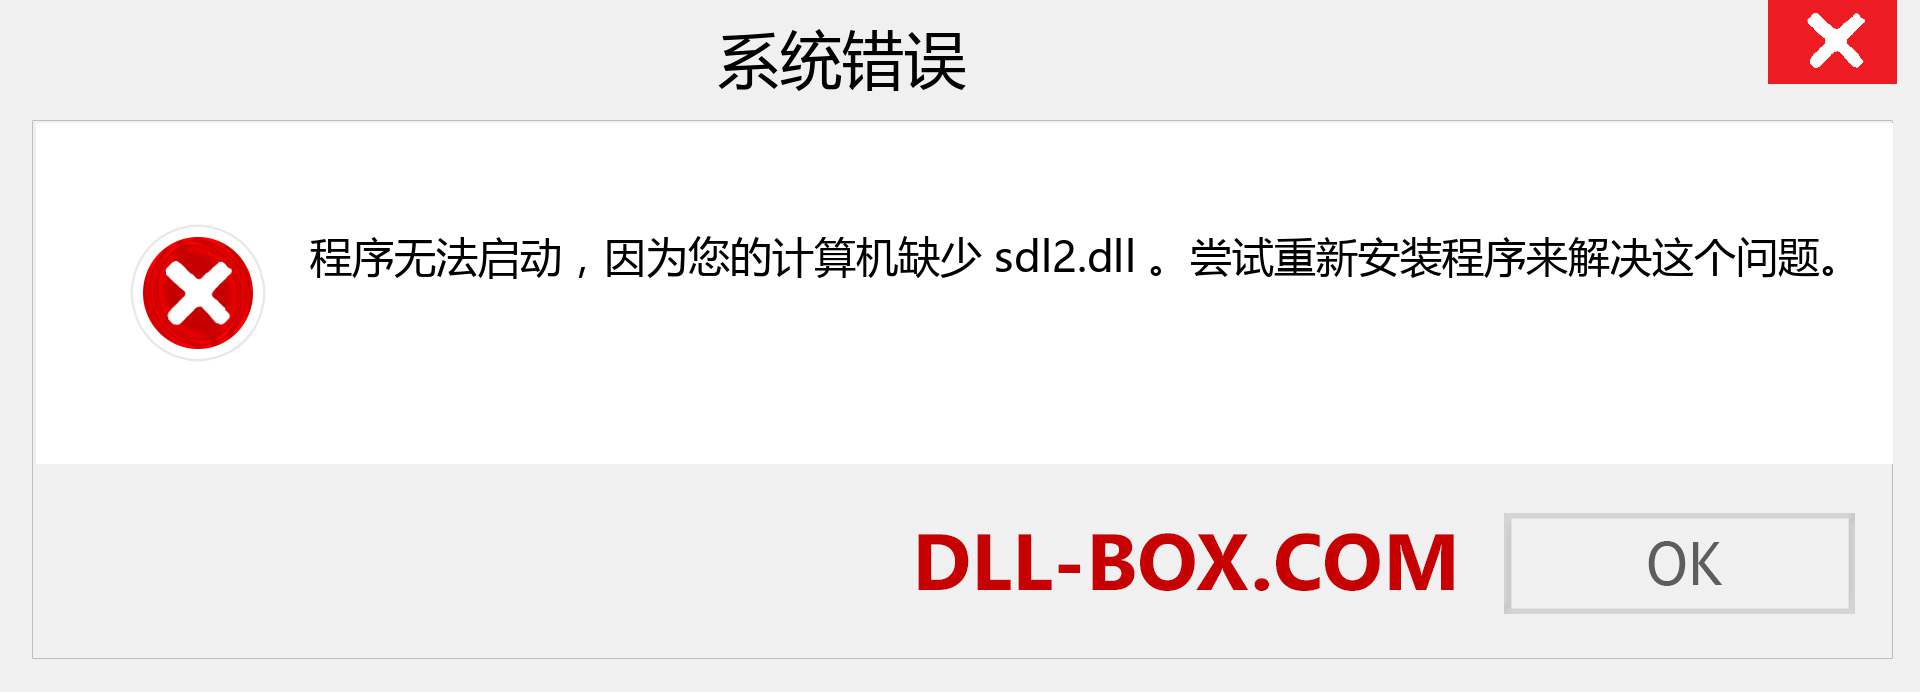 sdl2.dll 文件丢失？。 适用于 Windows 7、8、10 的下载 - 修复 Windows、照片、图像上的 sdl2 dll 丢失错误